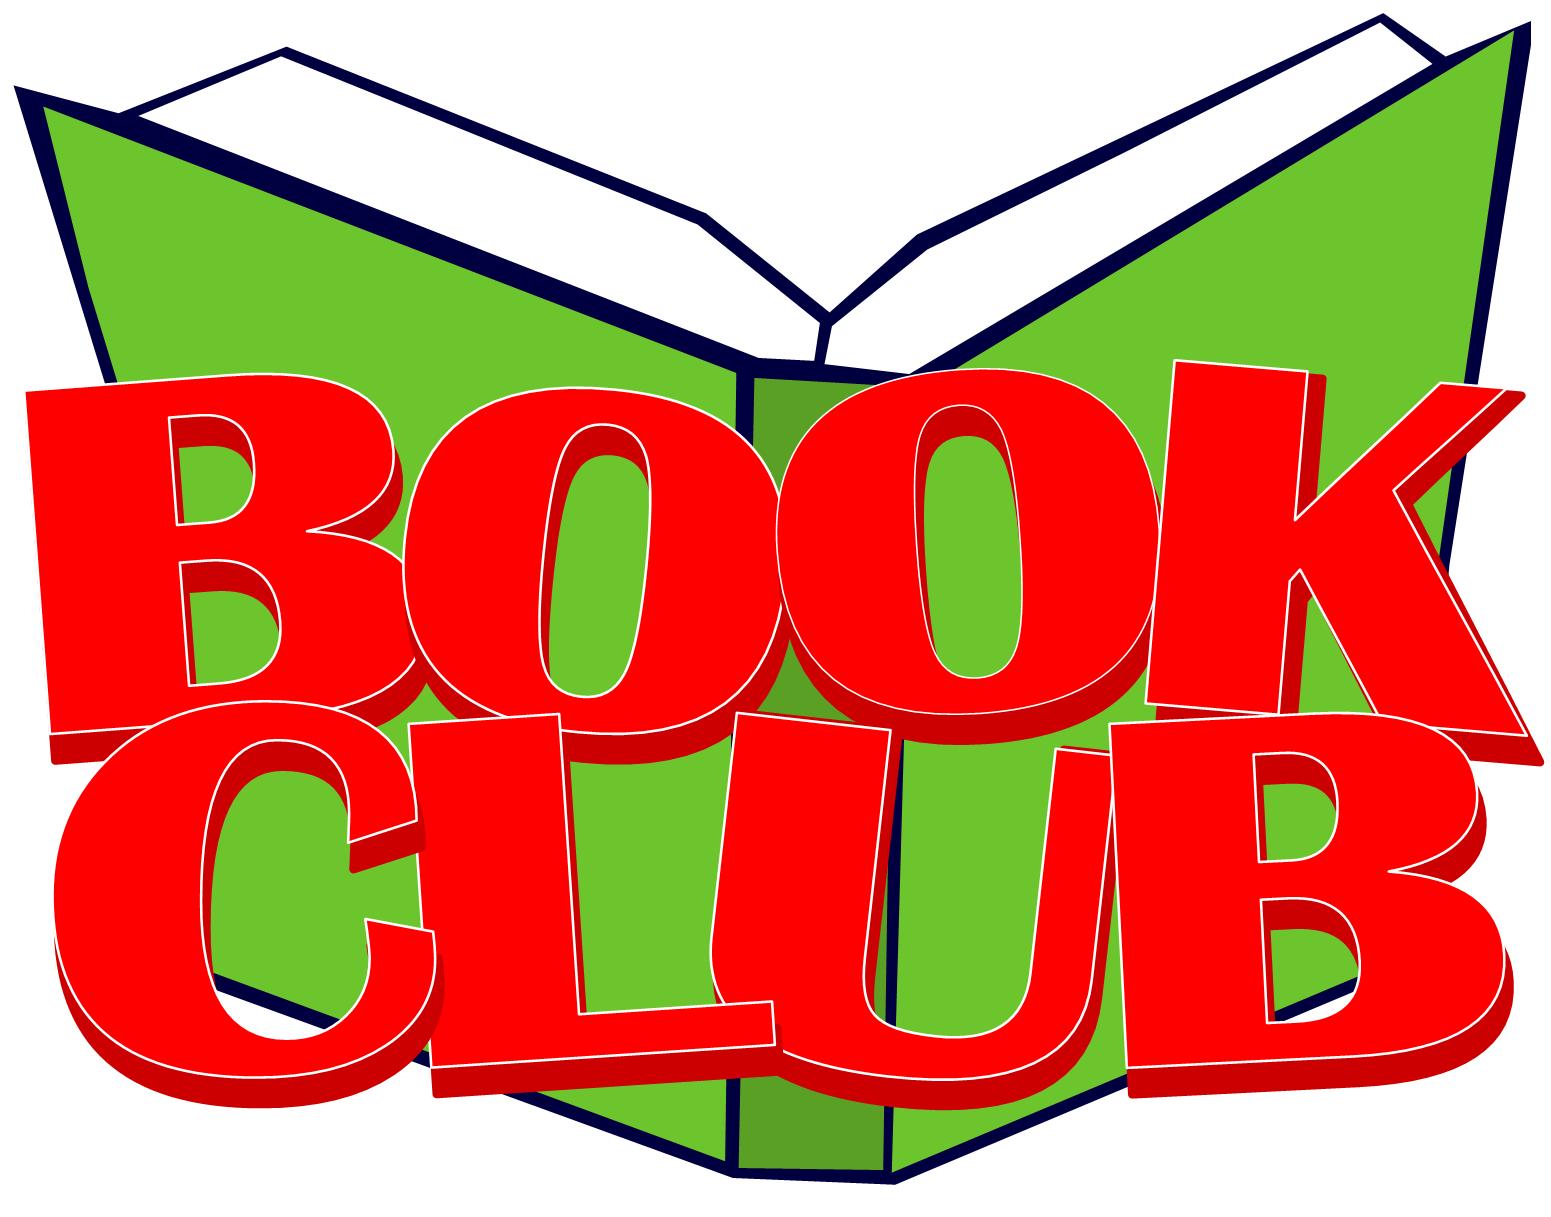 ... Book Club Clip Art ... - Book Club Clipart